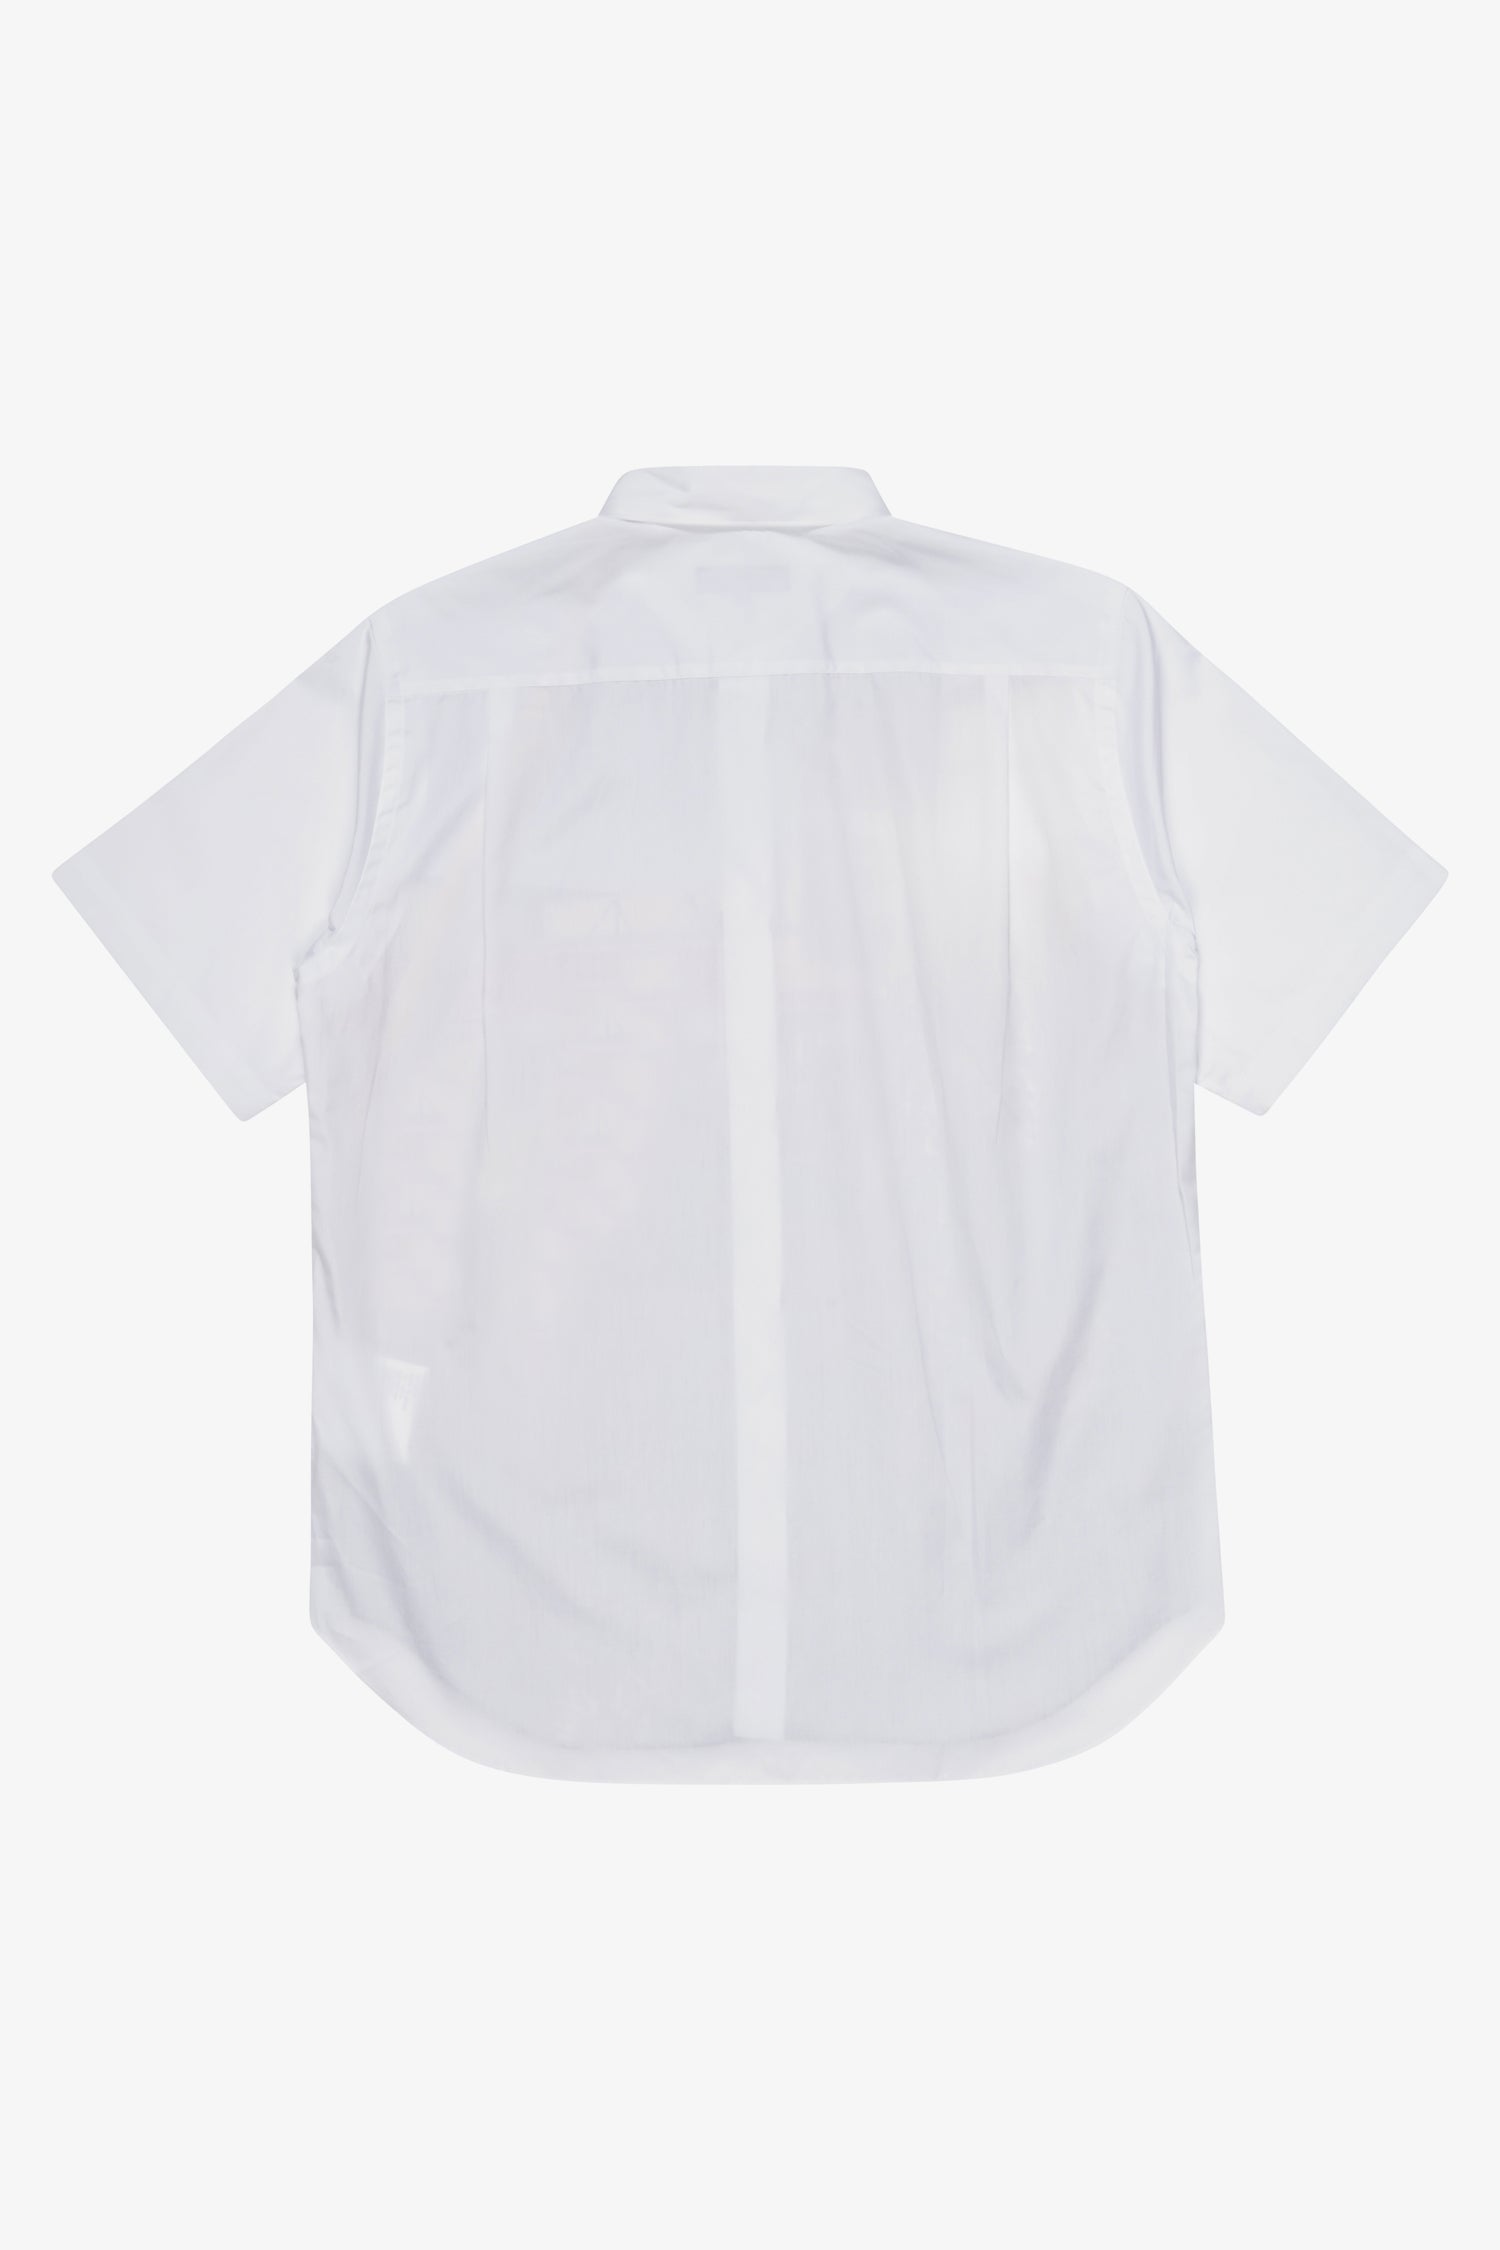 Selectshop FRAME - COMME DES GARÇONS HOMME Jamie Hawkesworth Shirt Shirt Dubai